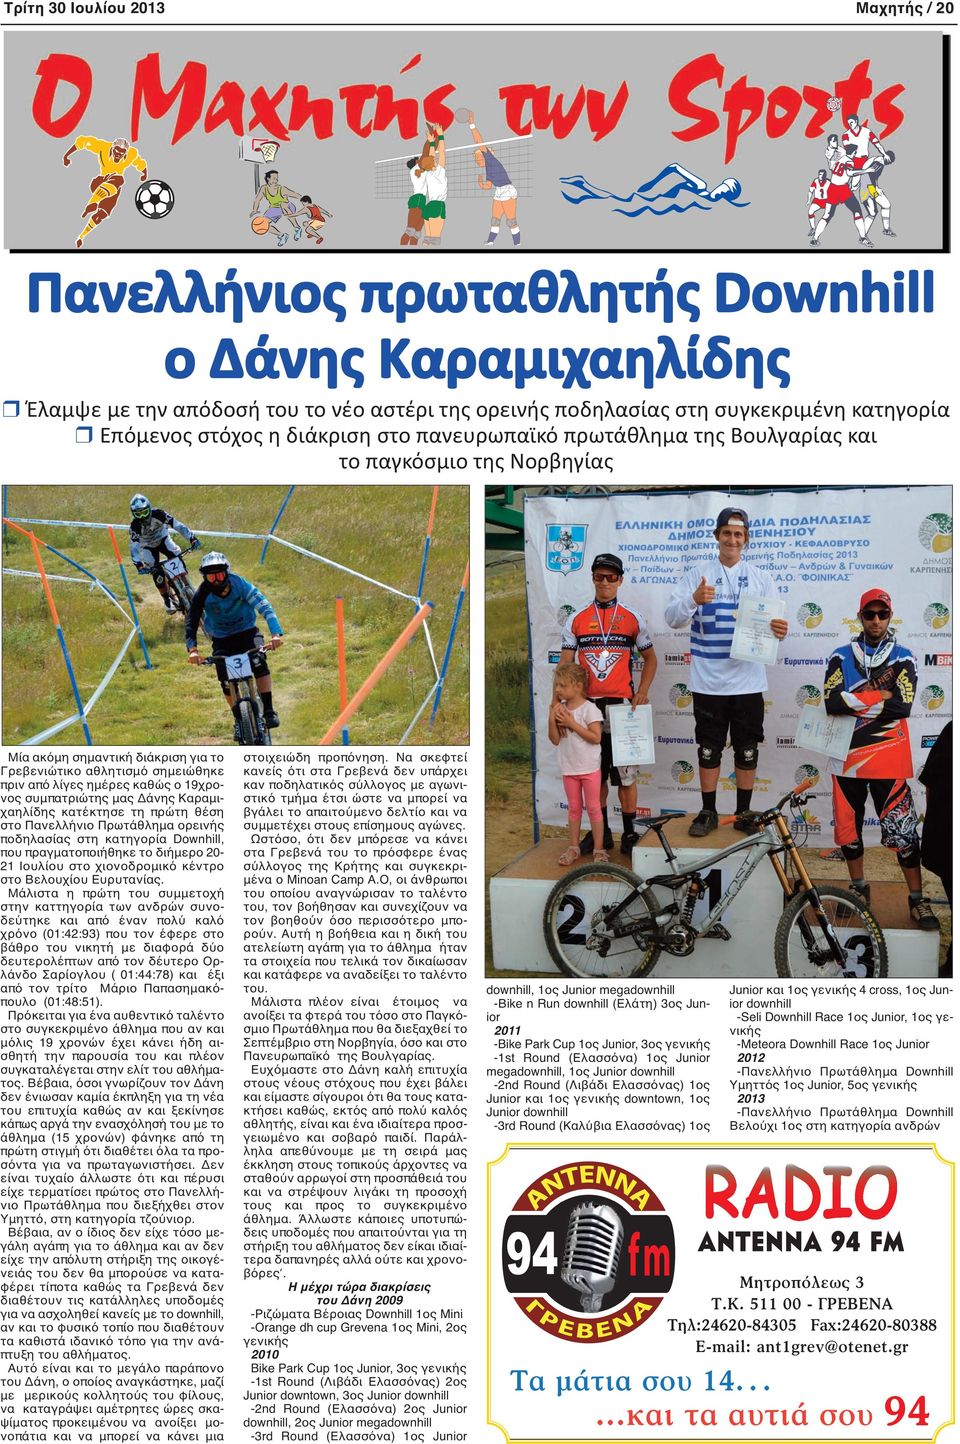 19χρονος συμπατριώτης μας Δάνης Καραμιχαηλίδης κατέκτησε τη πρώτη θέση στο Πανελλήνιο Πρωτάθλημα ορεινής ποδηλασίας στη κατηγορία Downhill, που πραγματοποιήθηκε το διήμερο 20-21 Ιουλίου στο